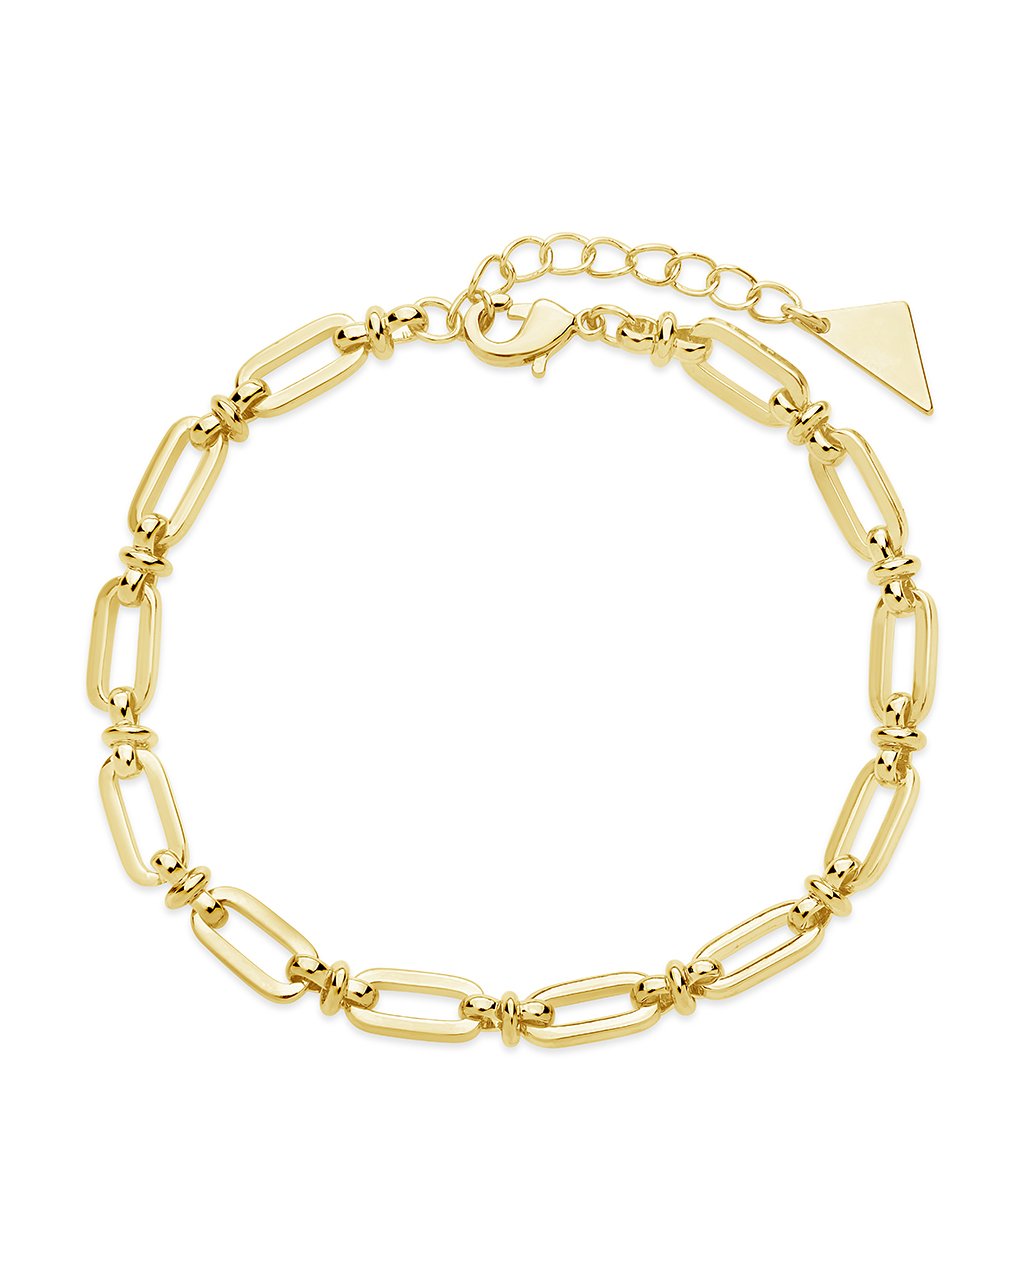 Oval Link Chain Bracelet Bracelet Sterling Forever Gold 